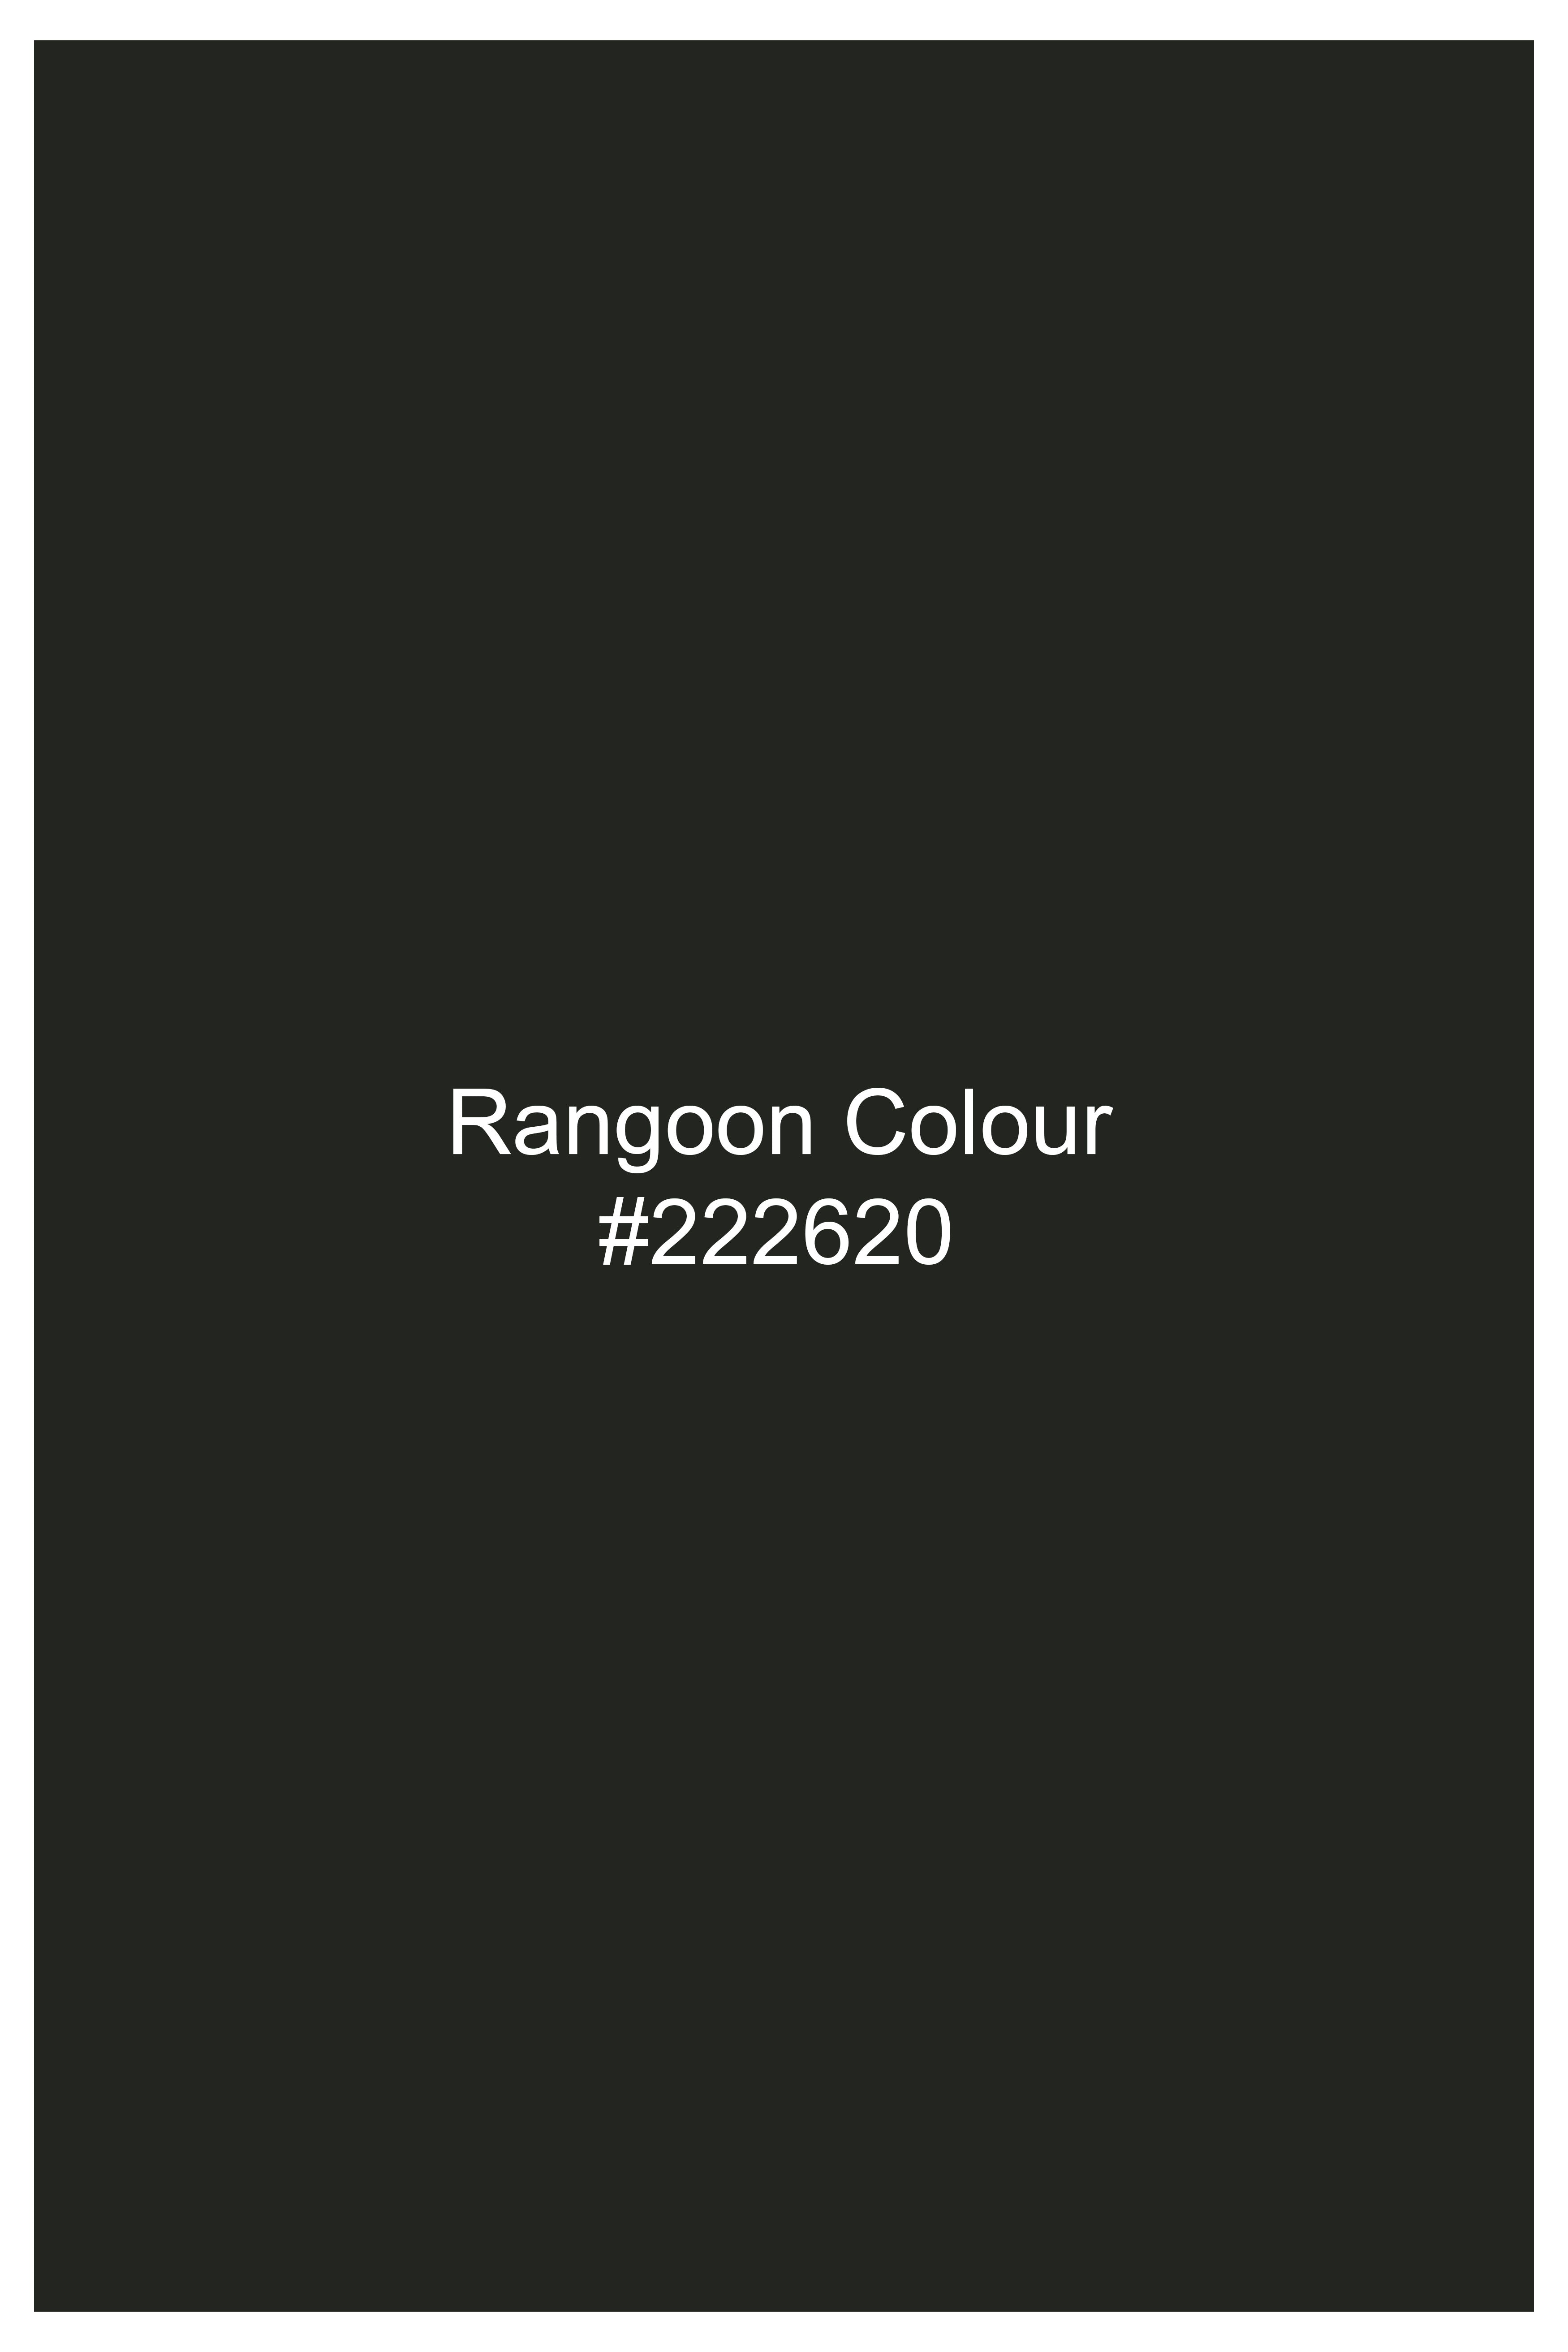 Rangoon Green Wool Rich Bandhgala Designer Suit ST2807-D1-36, ST2807-D1-38, ST2807-D1-40, ST2807-D1-42, ST2807-D1-44, ST2807-D1-46, ST2807-D1-48, ST2807-D1-50, ST2807-D1-52, ST2807-D1-54, ST2807-D1-56, ST2807-D1-58, ST2807-D1-60